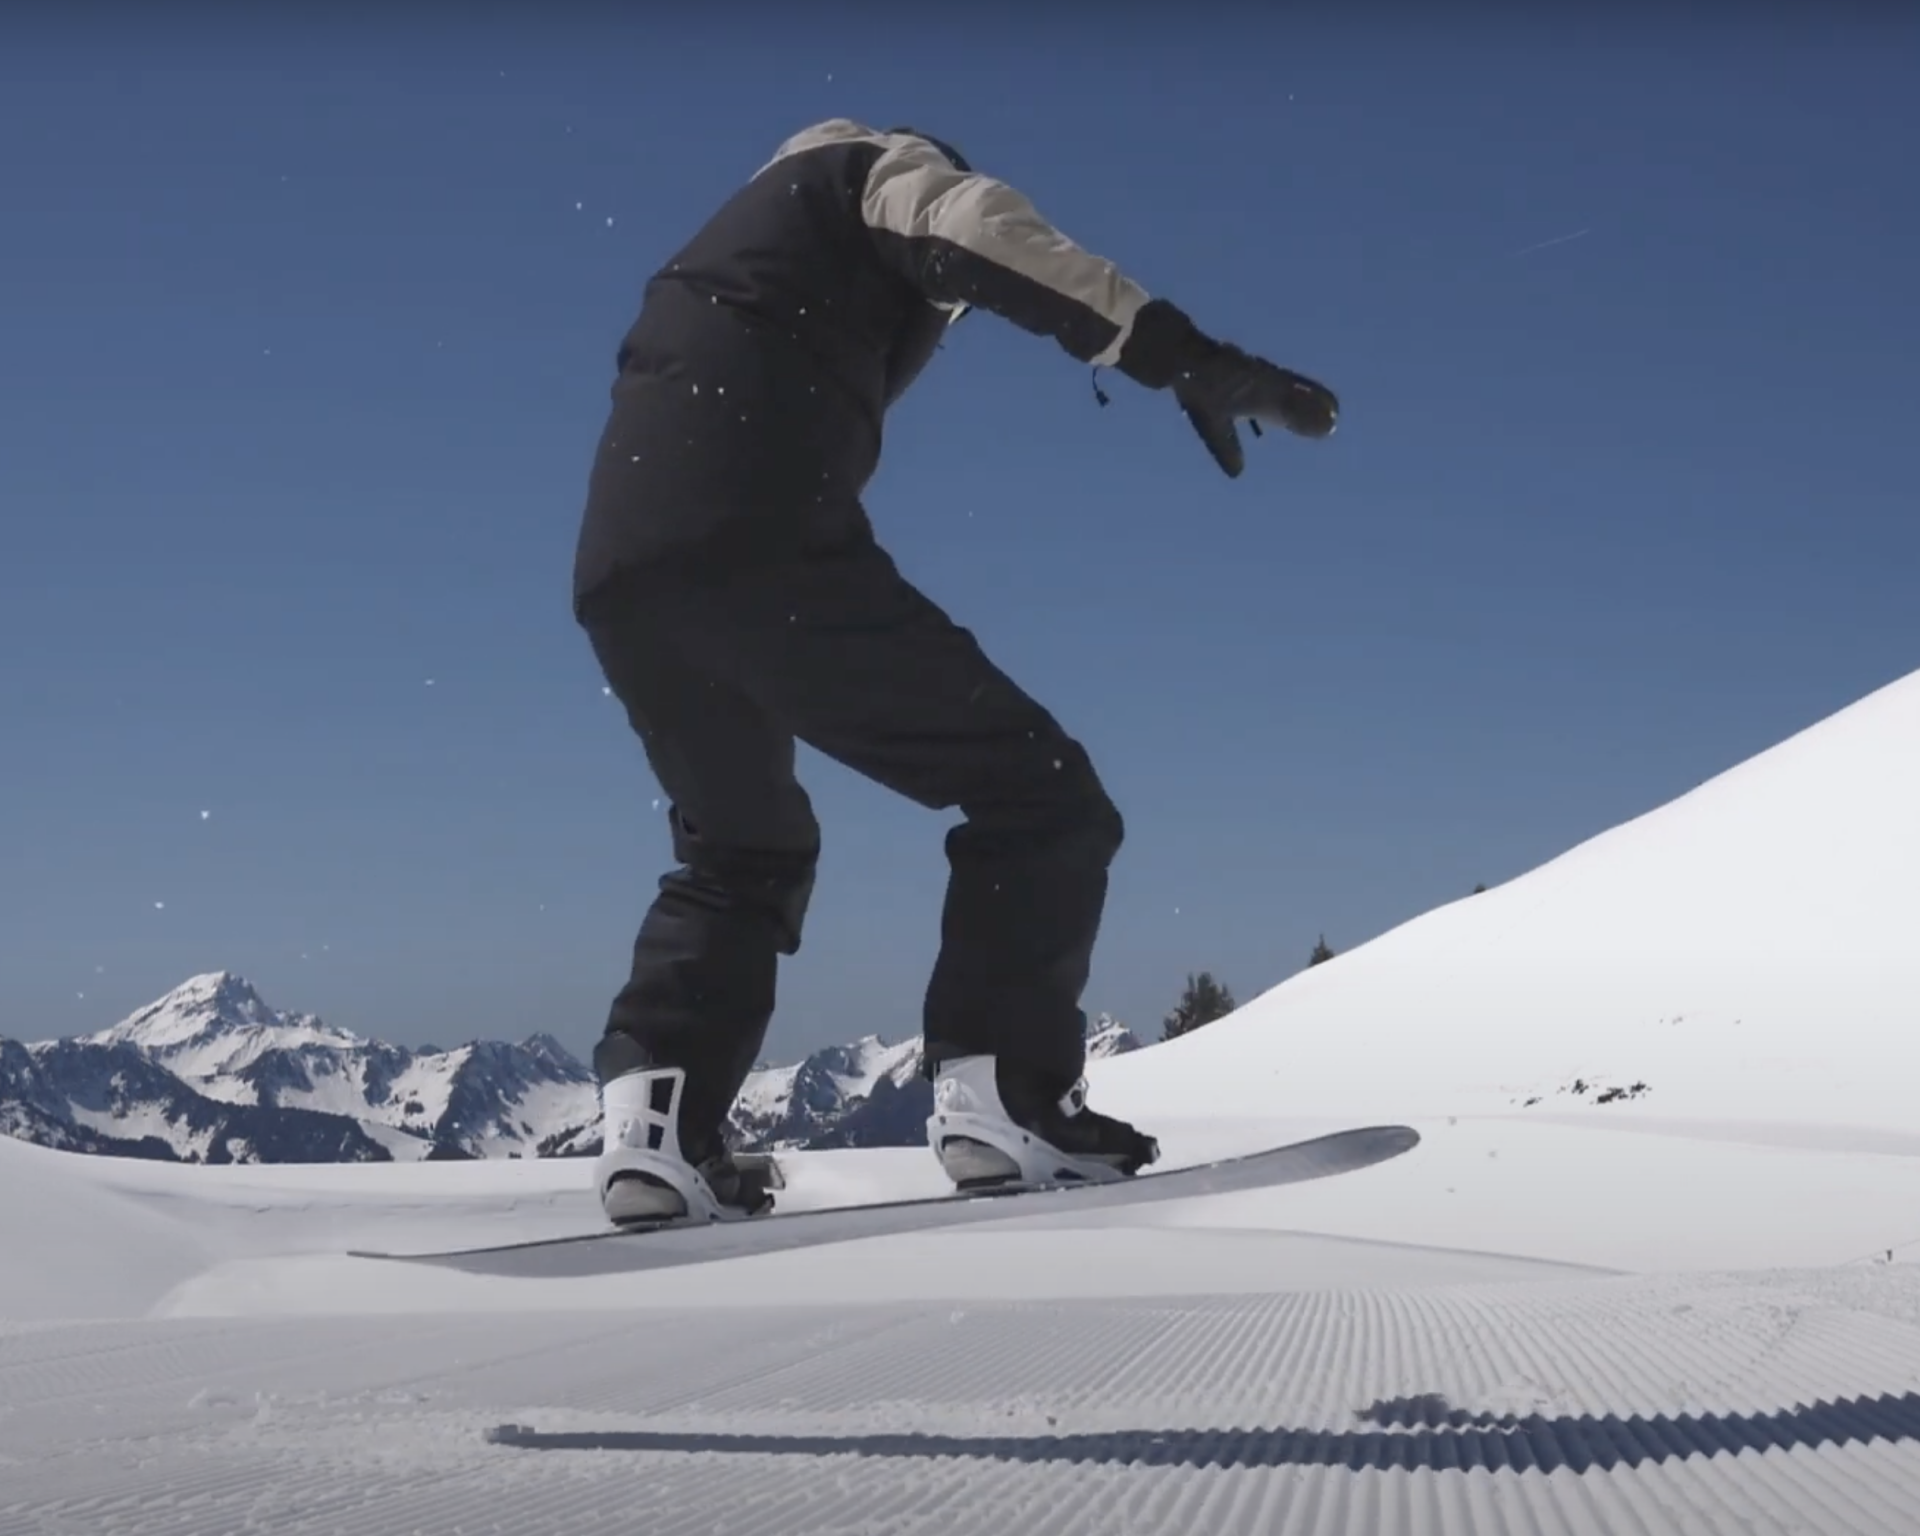 Comment faire un frontside 180 en snowboard ?